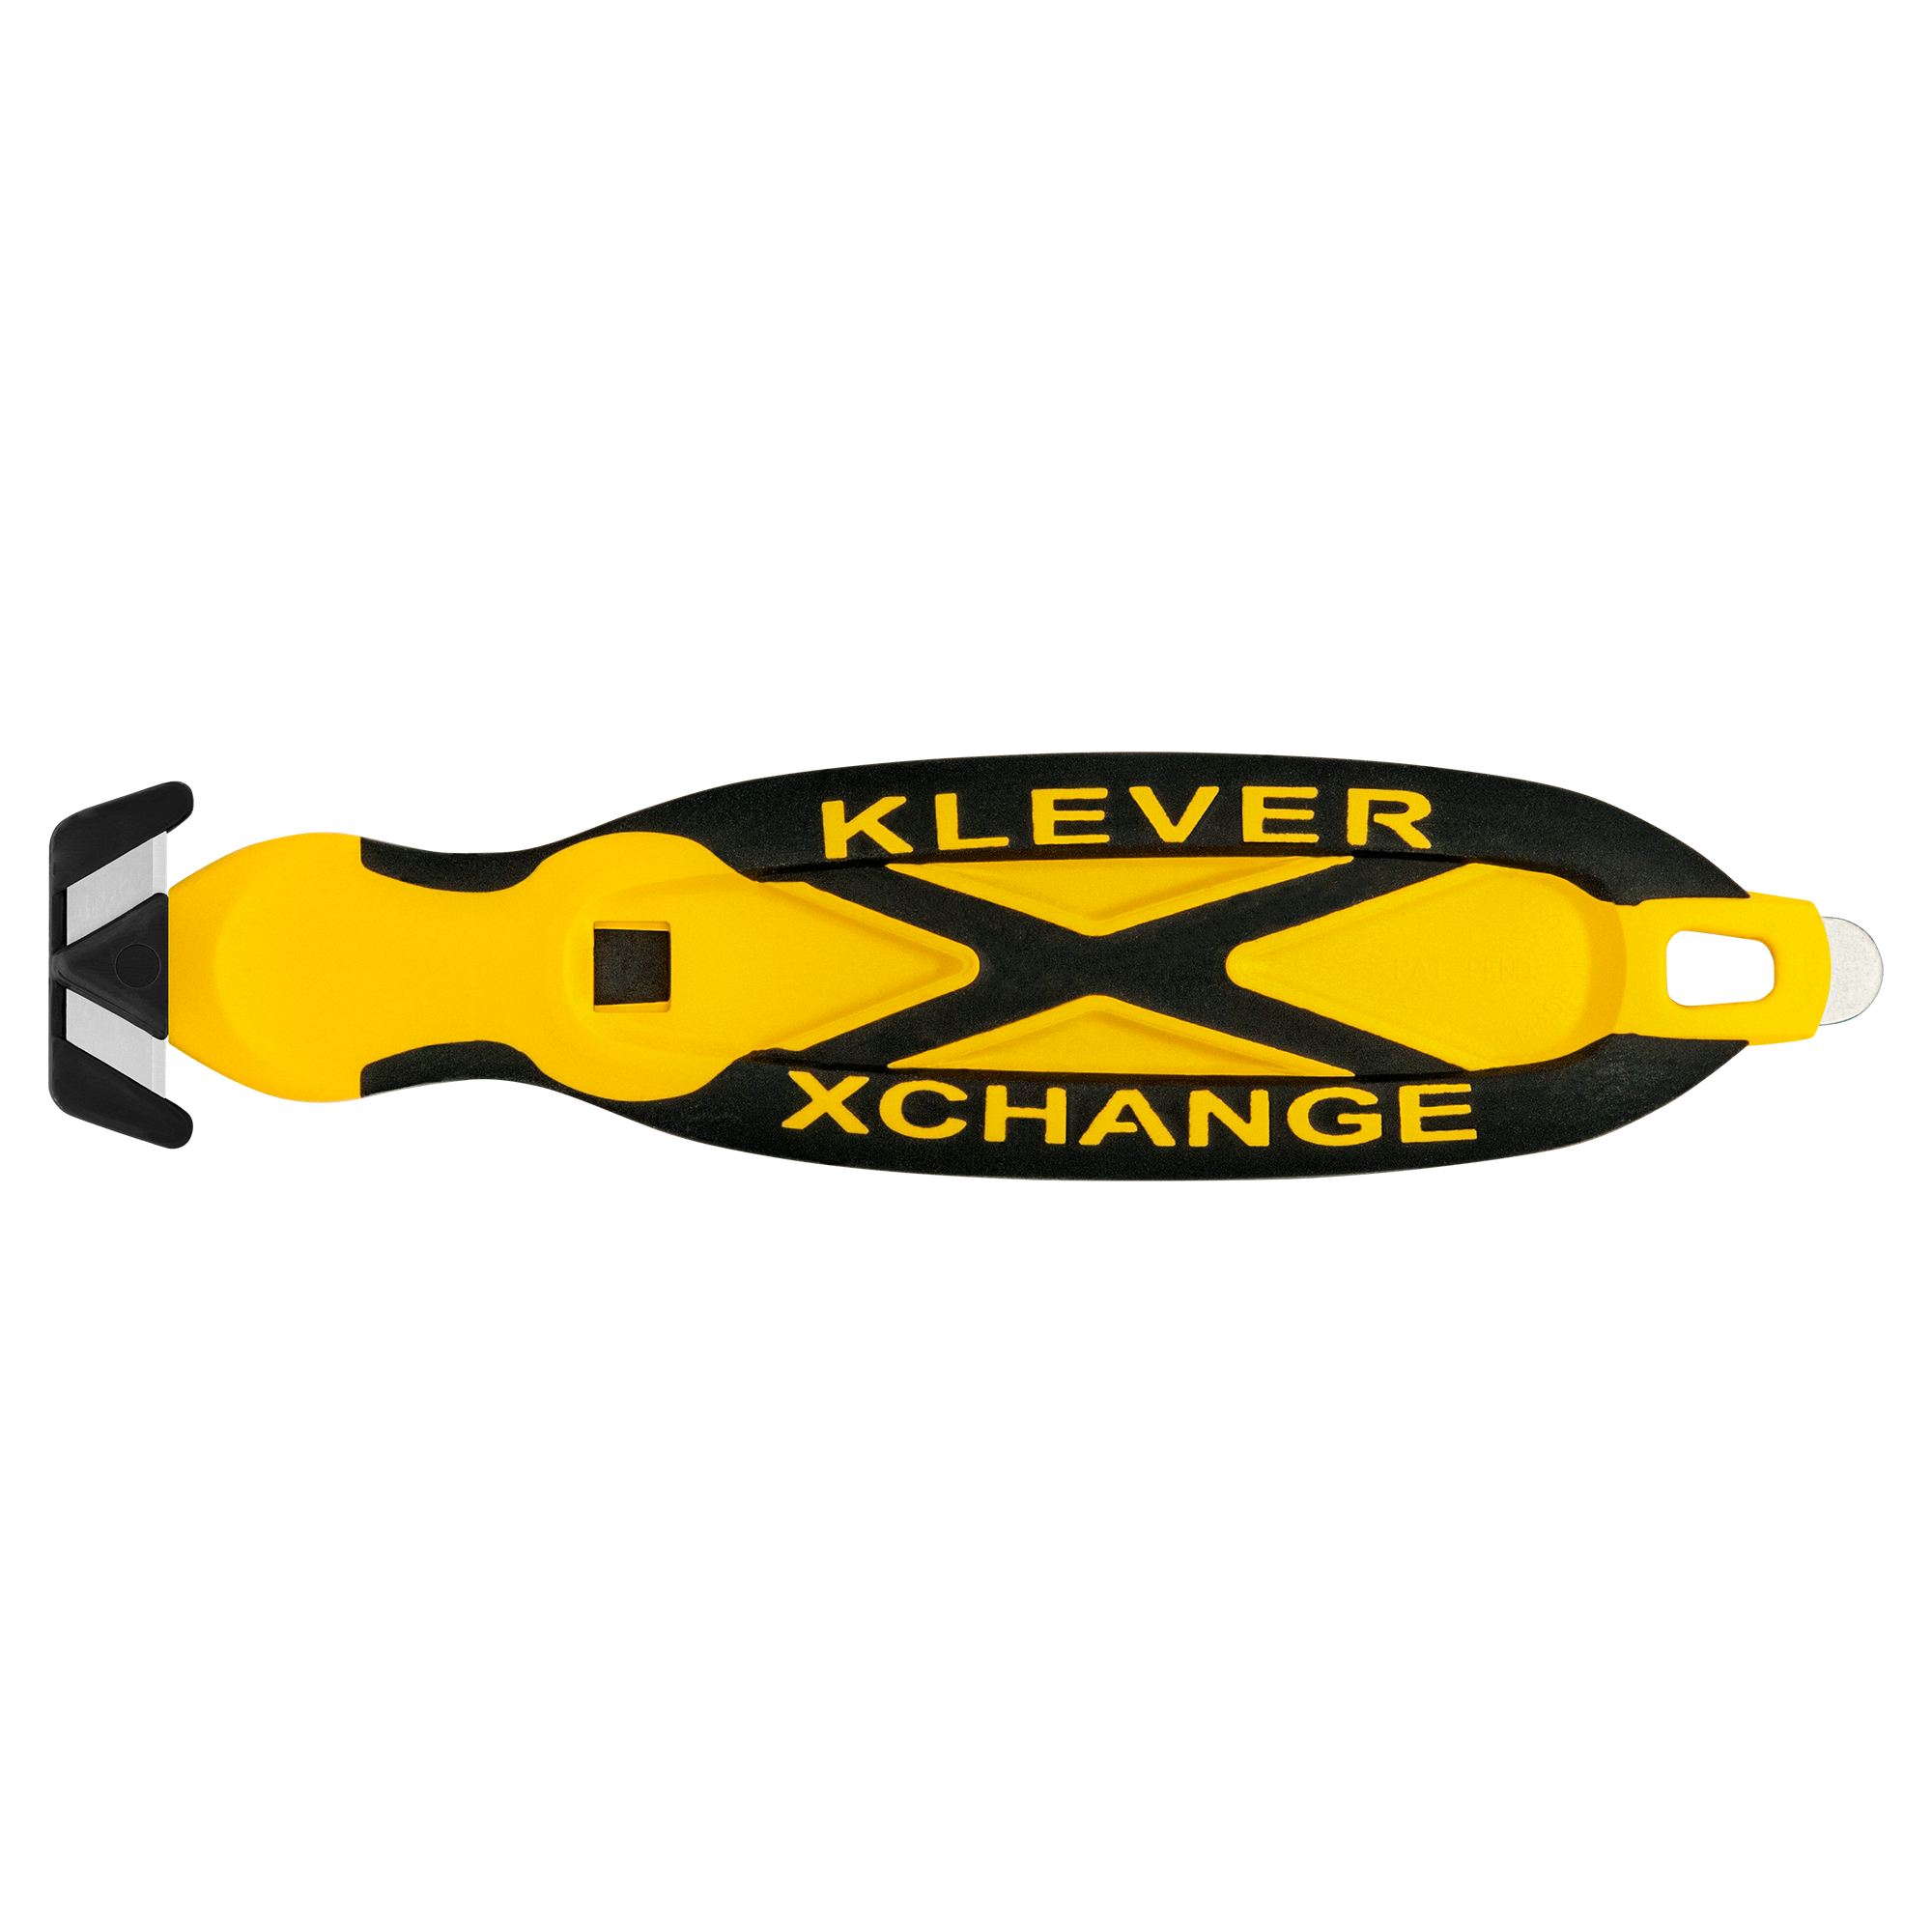 Klever X-Change Box Cutter